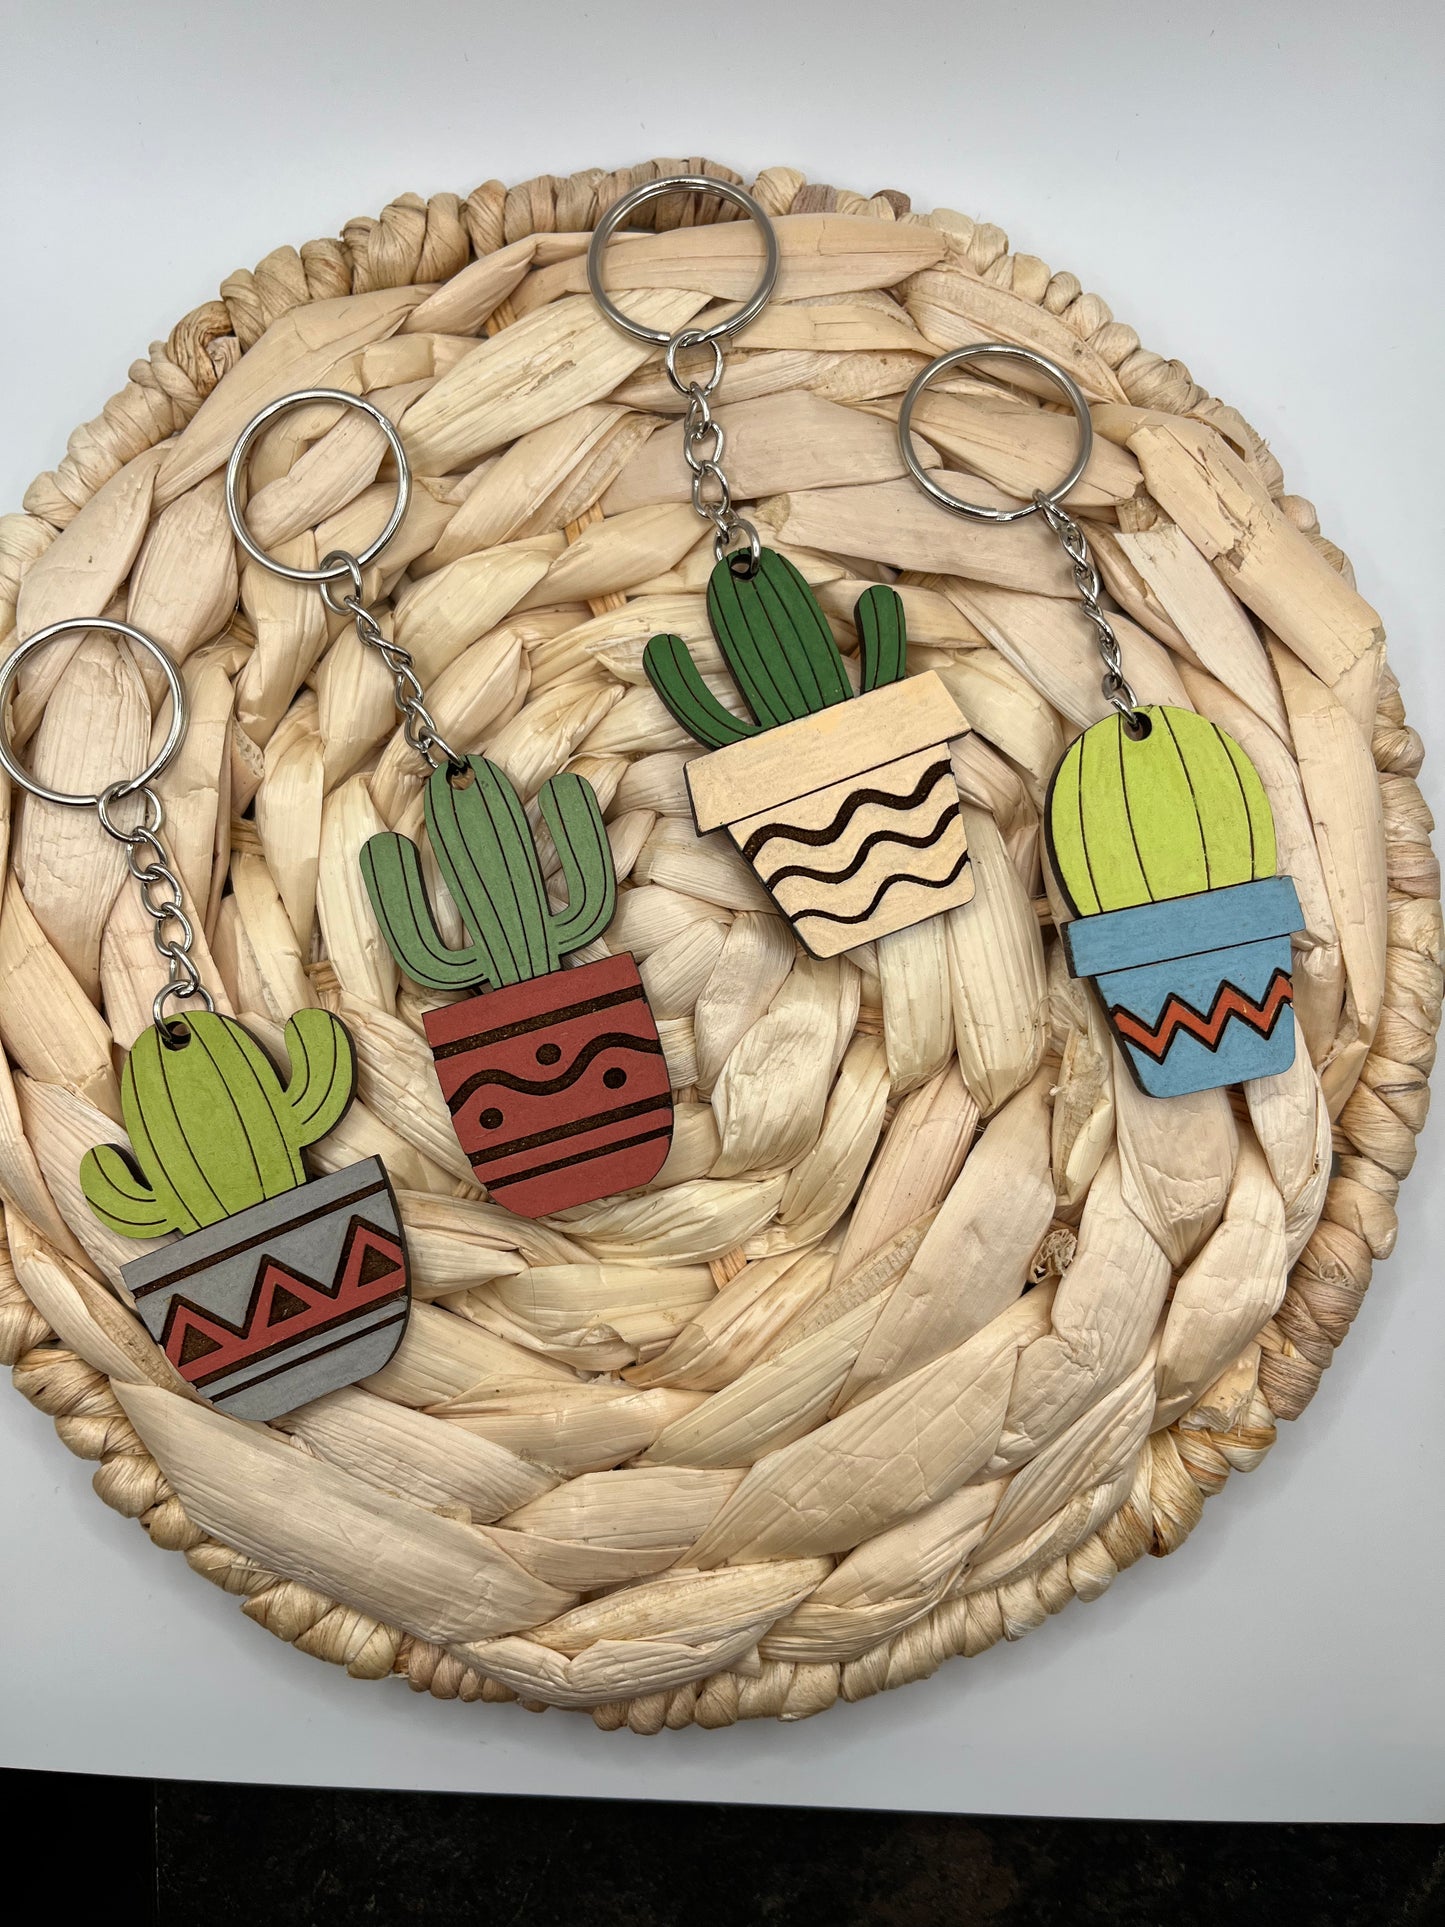 Cactus keychain